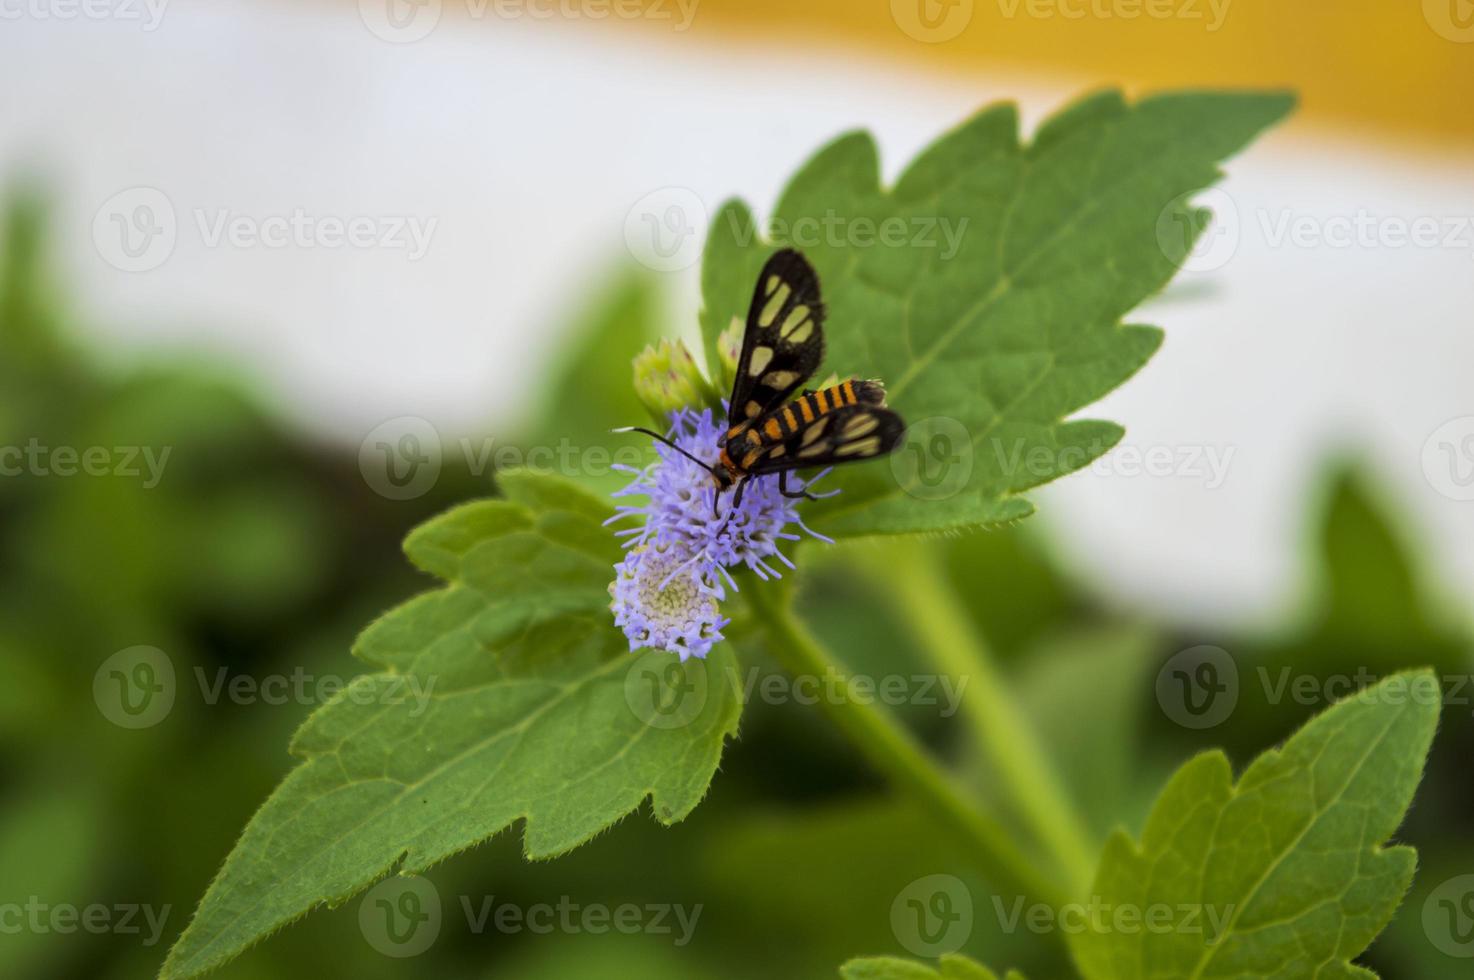 huebneri, een kleine vlinder die op een praxelisbloem zit. natuurfotografie foto